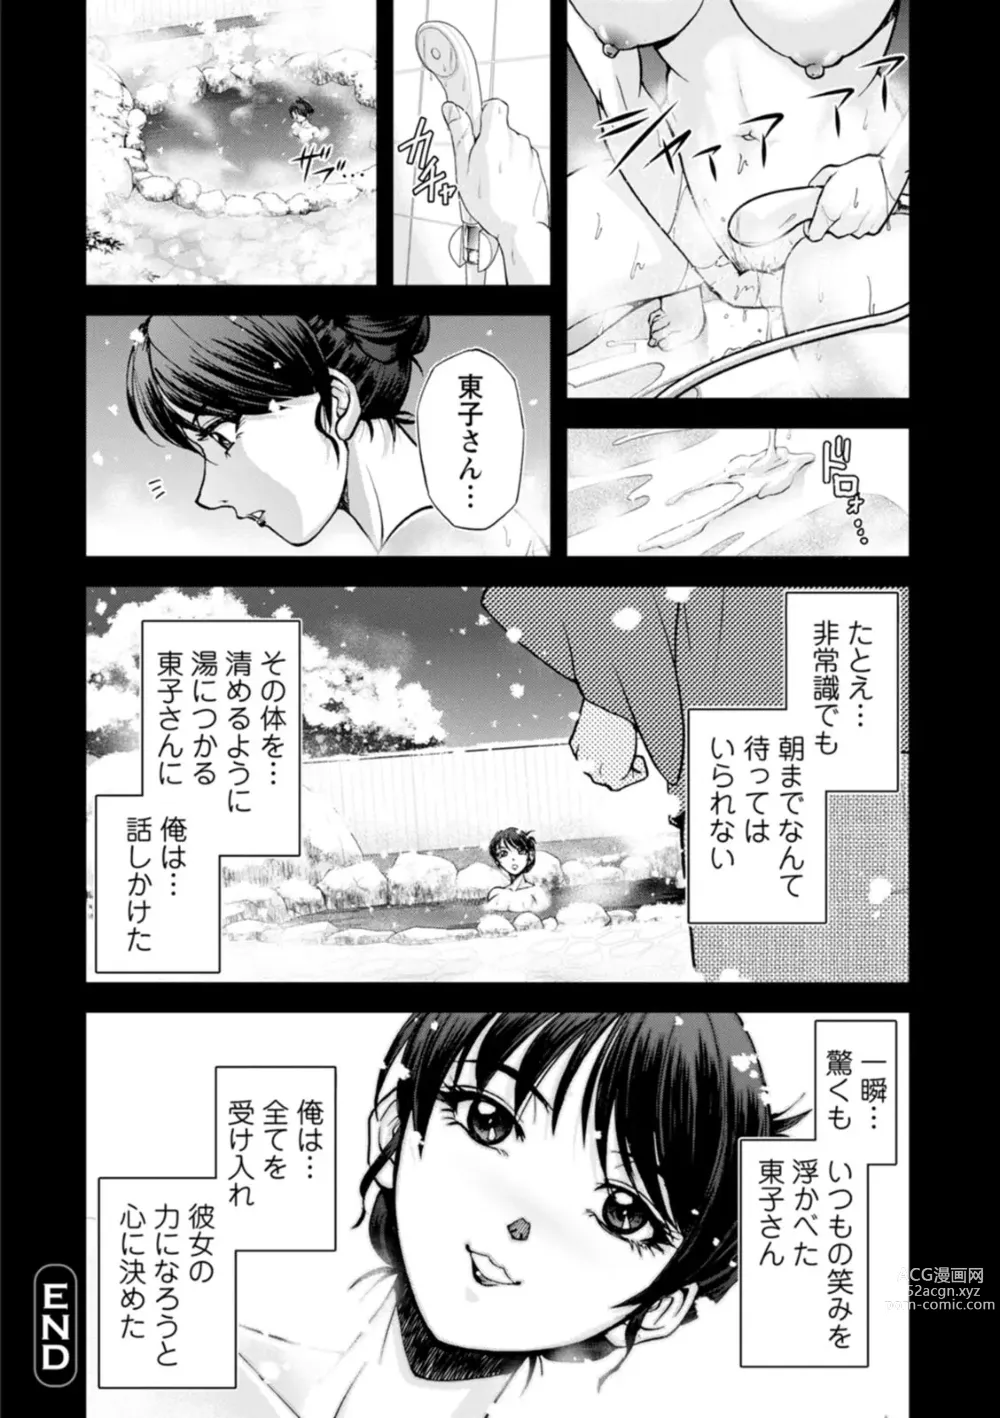 Page 24 of manga Okami no Touko-san - Miss. Touko, a Landlady of a Hot spring inn